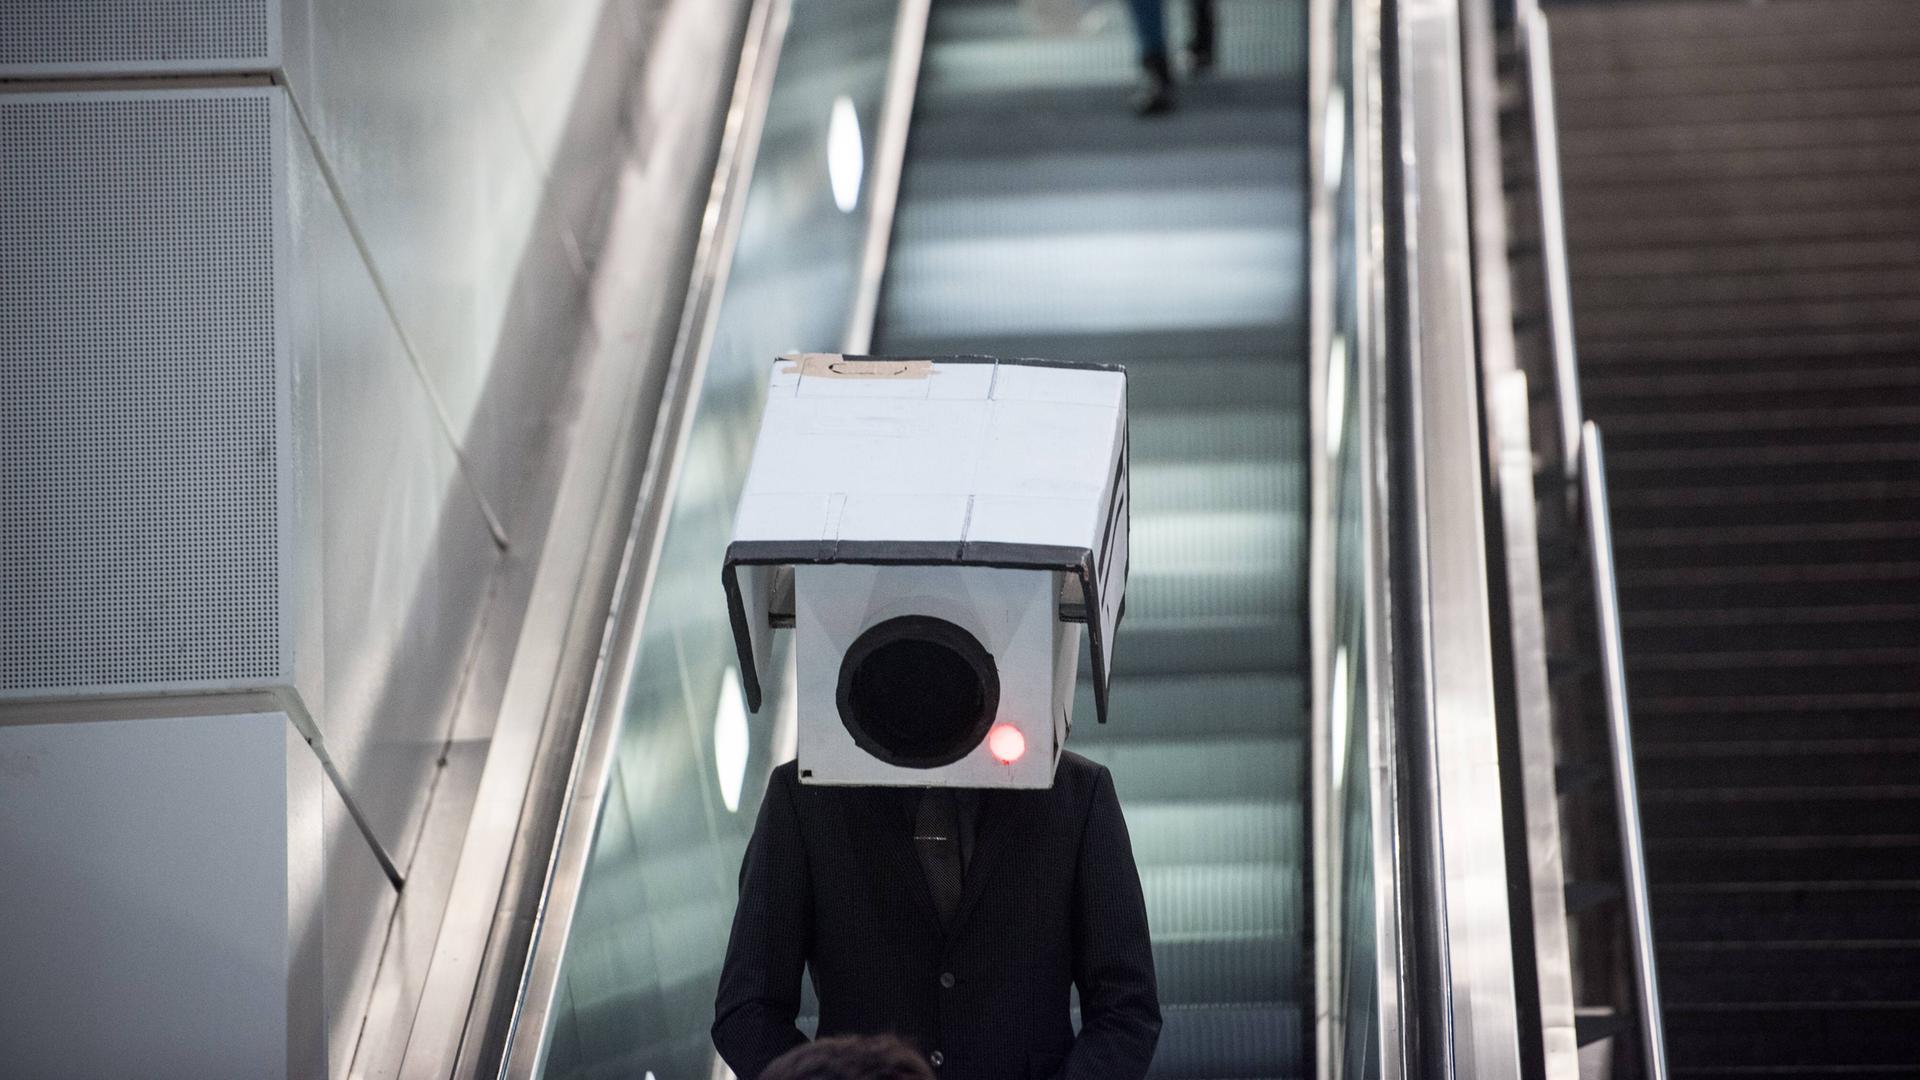 Ein Teilnehmer mit einer Maske in Form einer Überwachungskamera bei einer Aktion gegen den Ausbau von Videoüberwachung im öffentlichen Raum am Bahnhof Südkreuz in Berlin. Die Person trägt einen dunkeln Anzug und steht auf einer Rolltreppe.